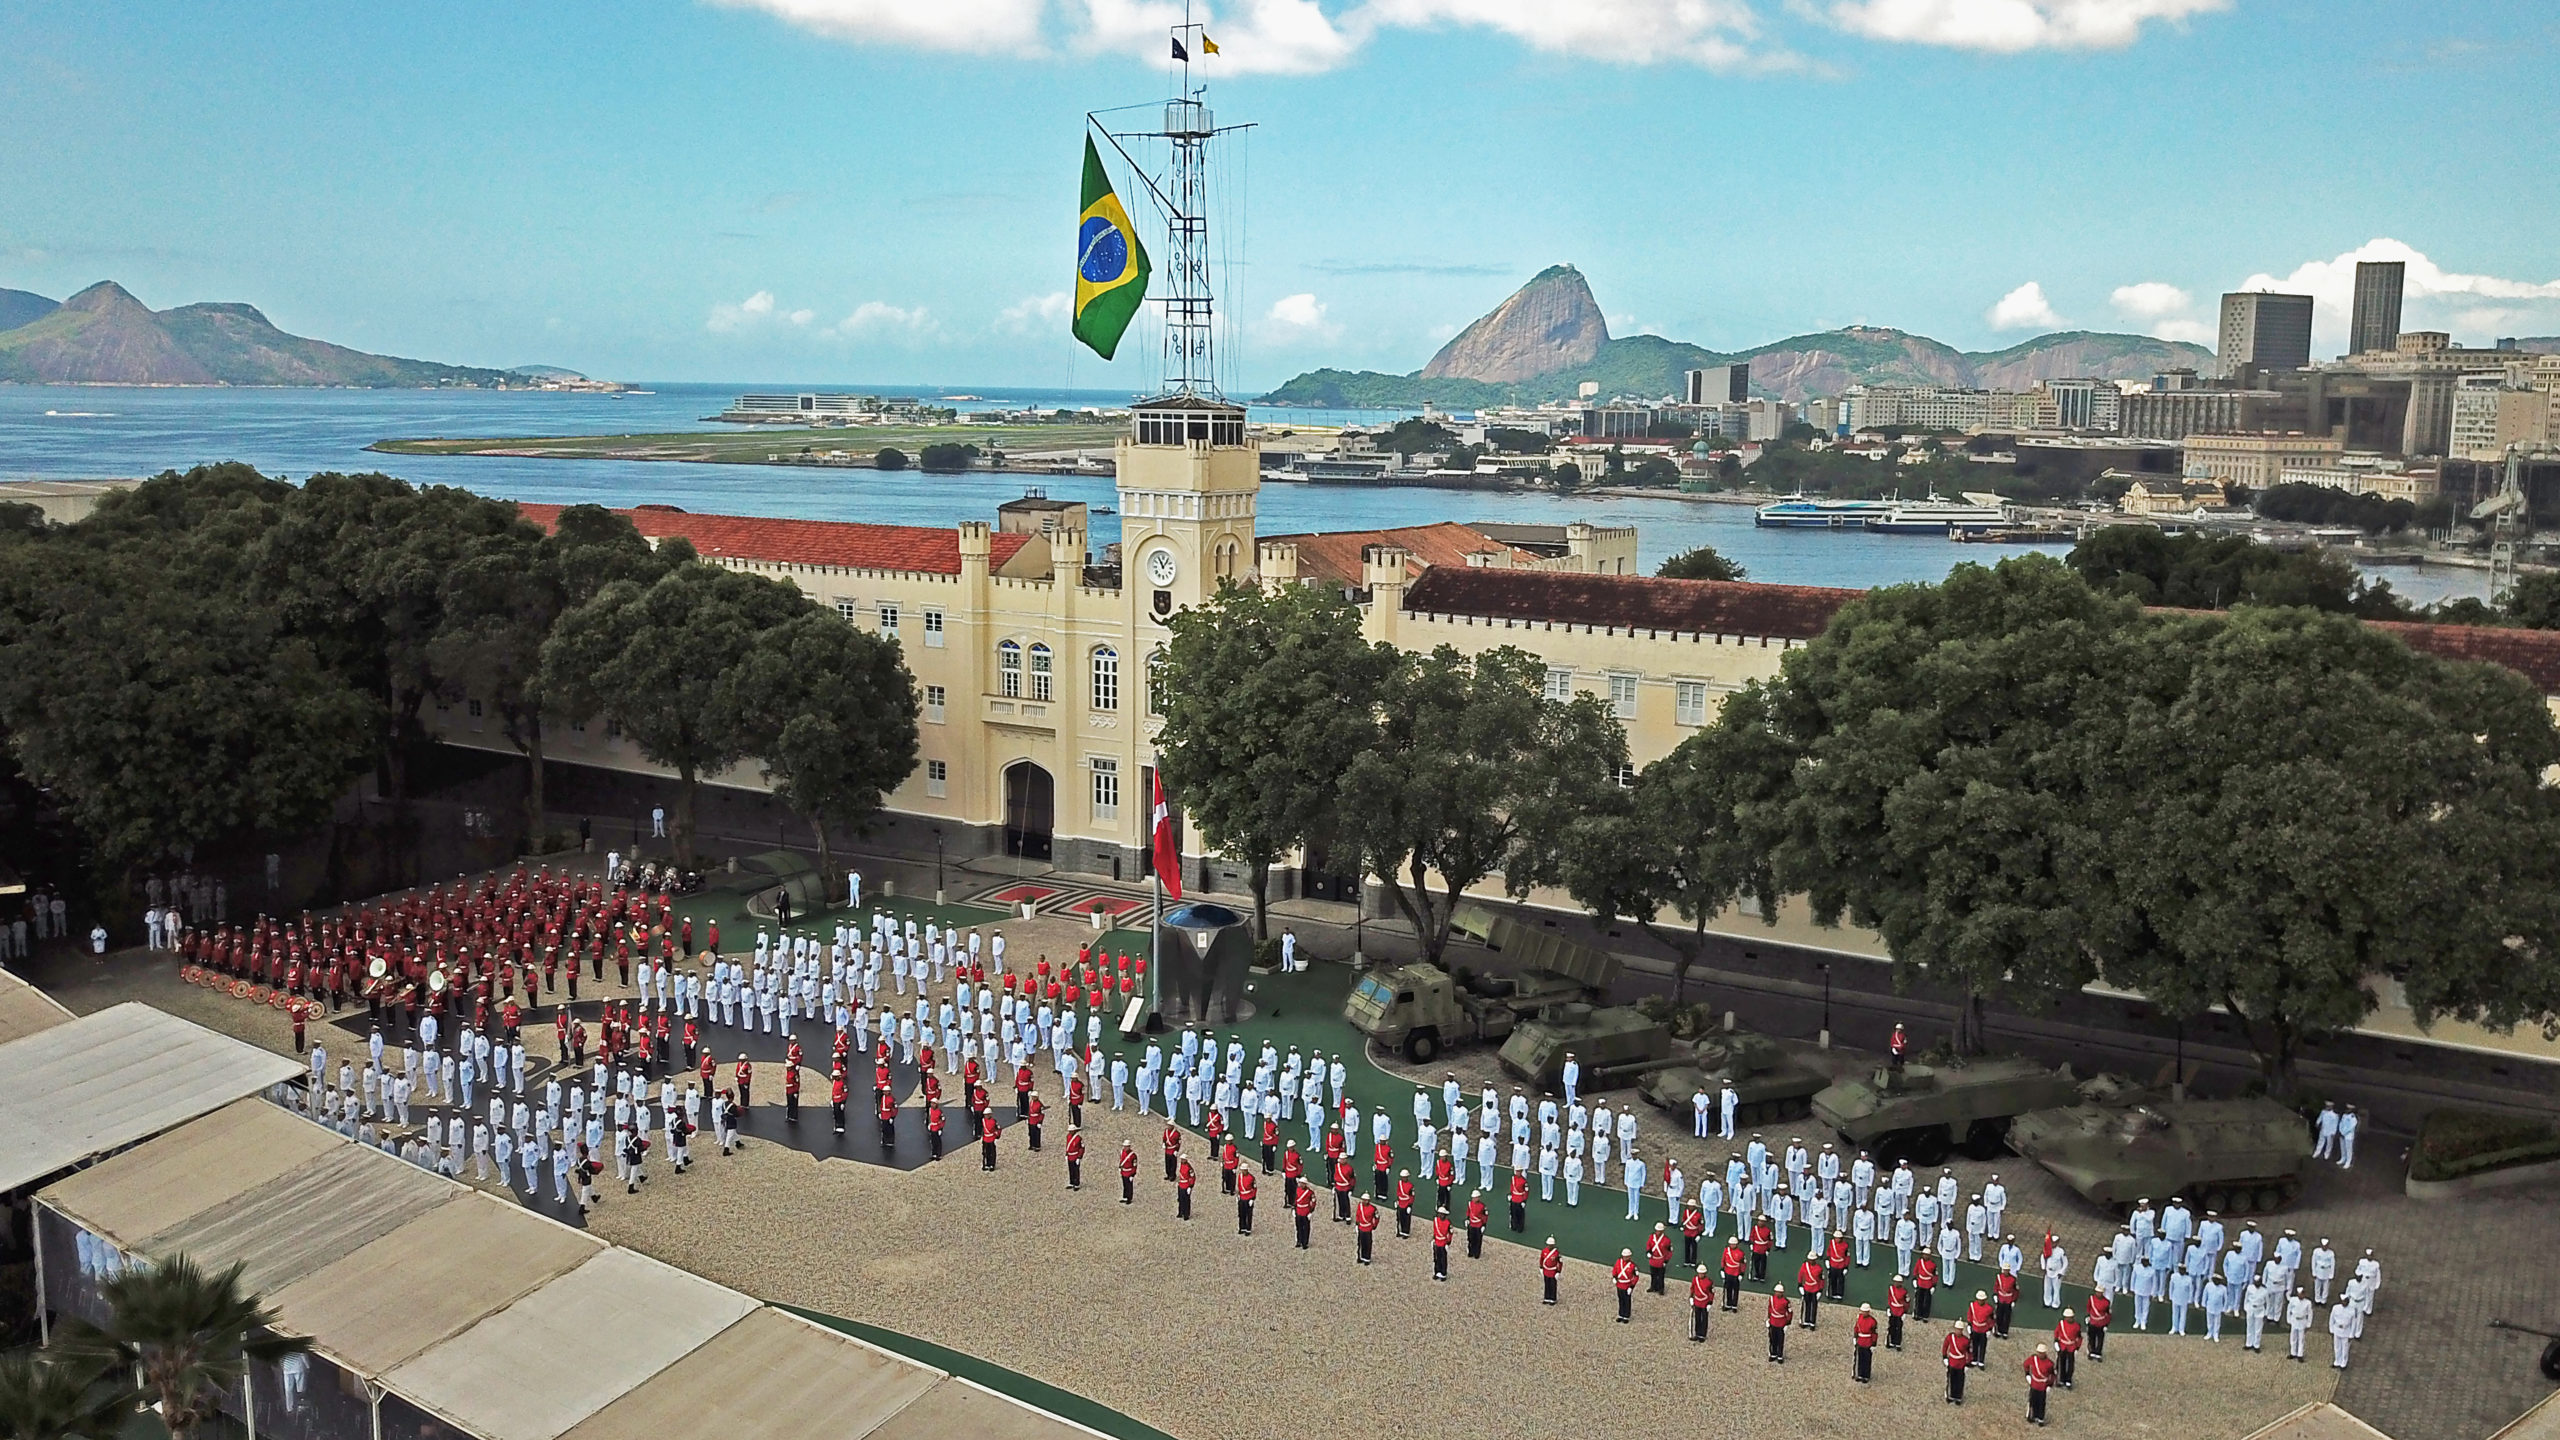 Infantes de marina de Brasil conmemoran 213.º aniversario con el desafío de reinventarse